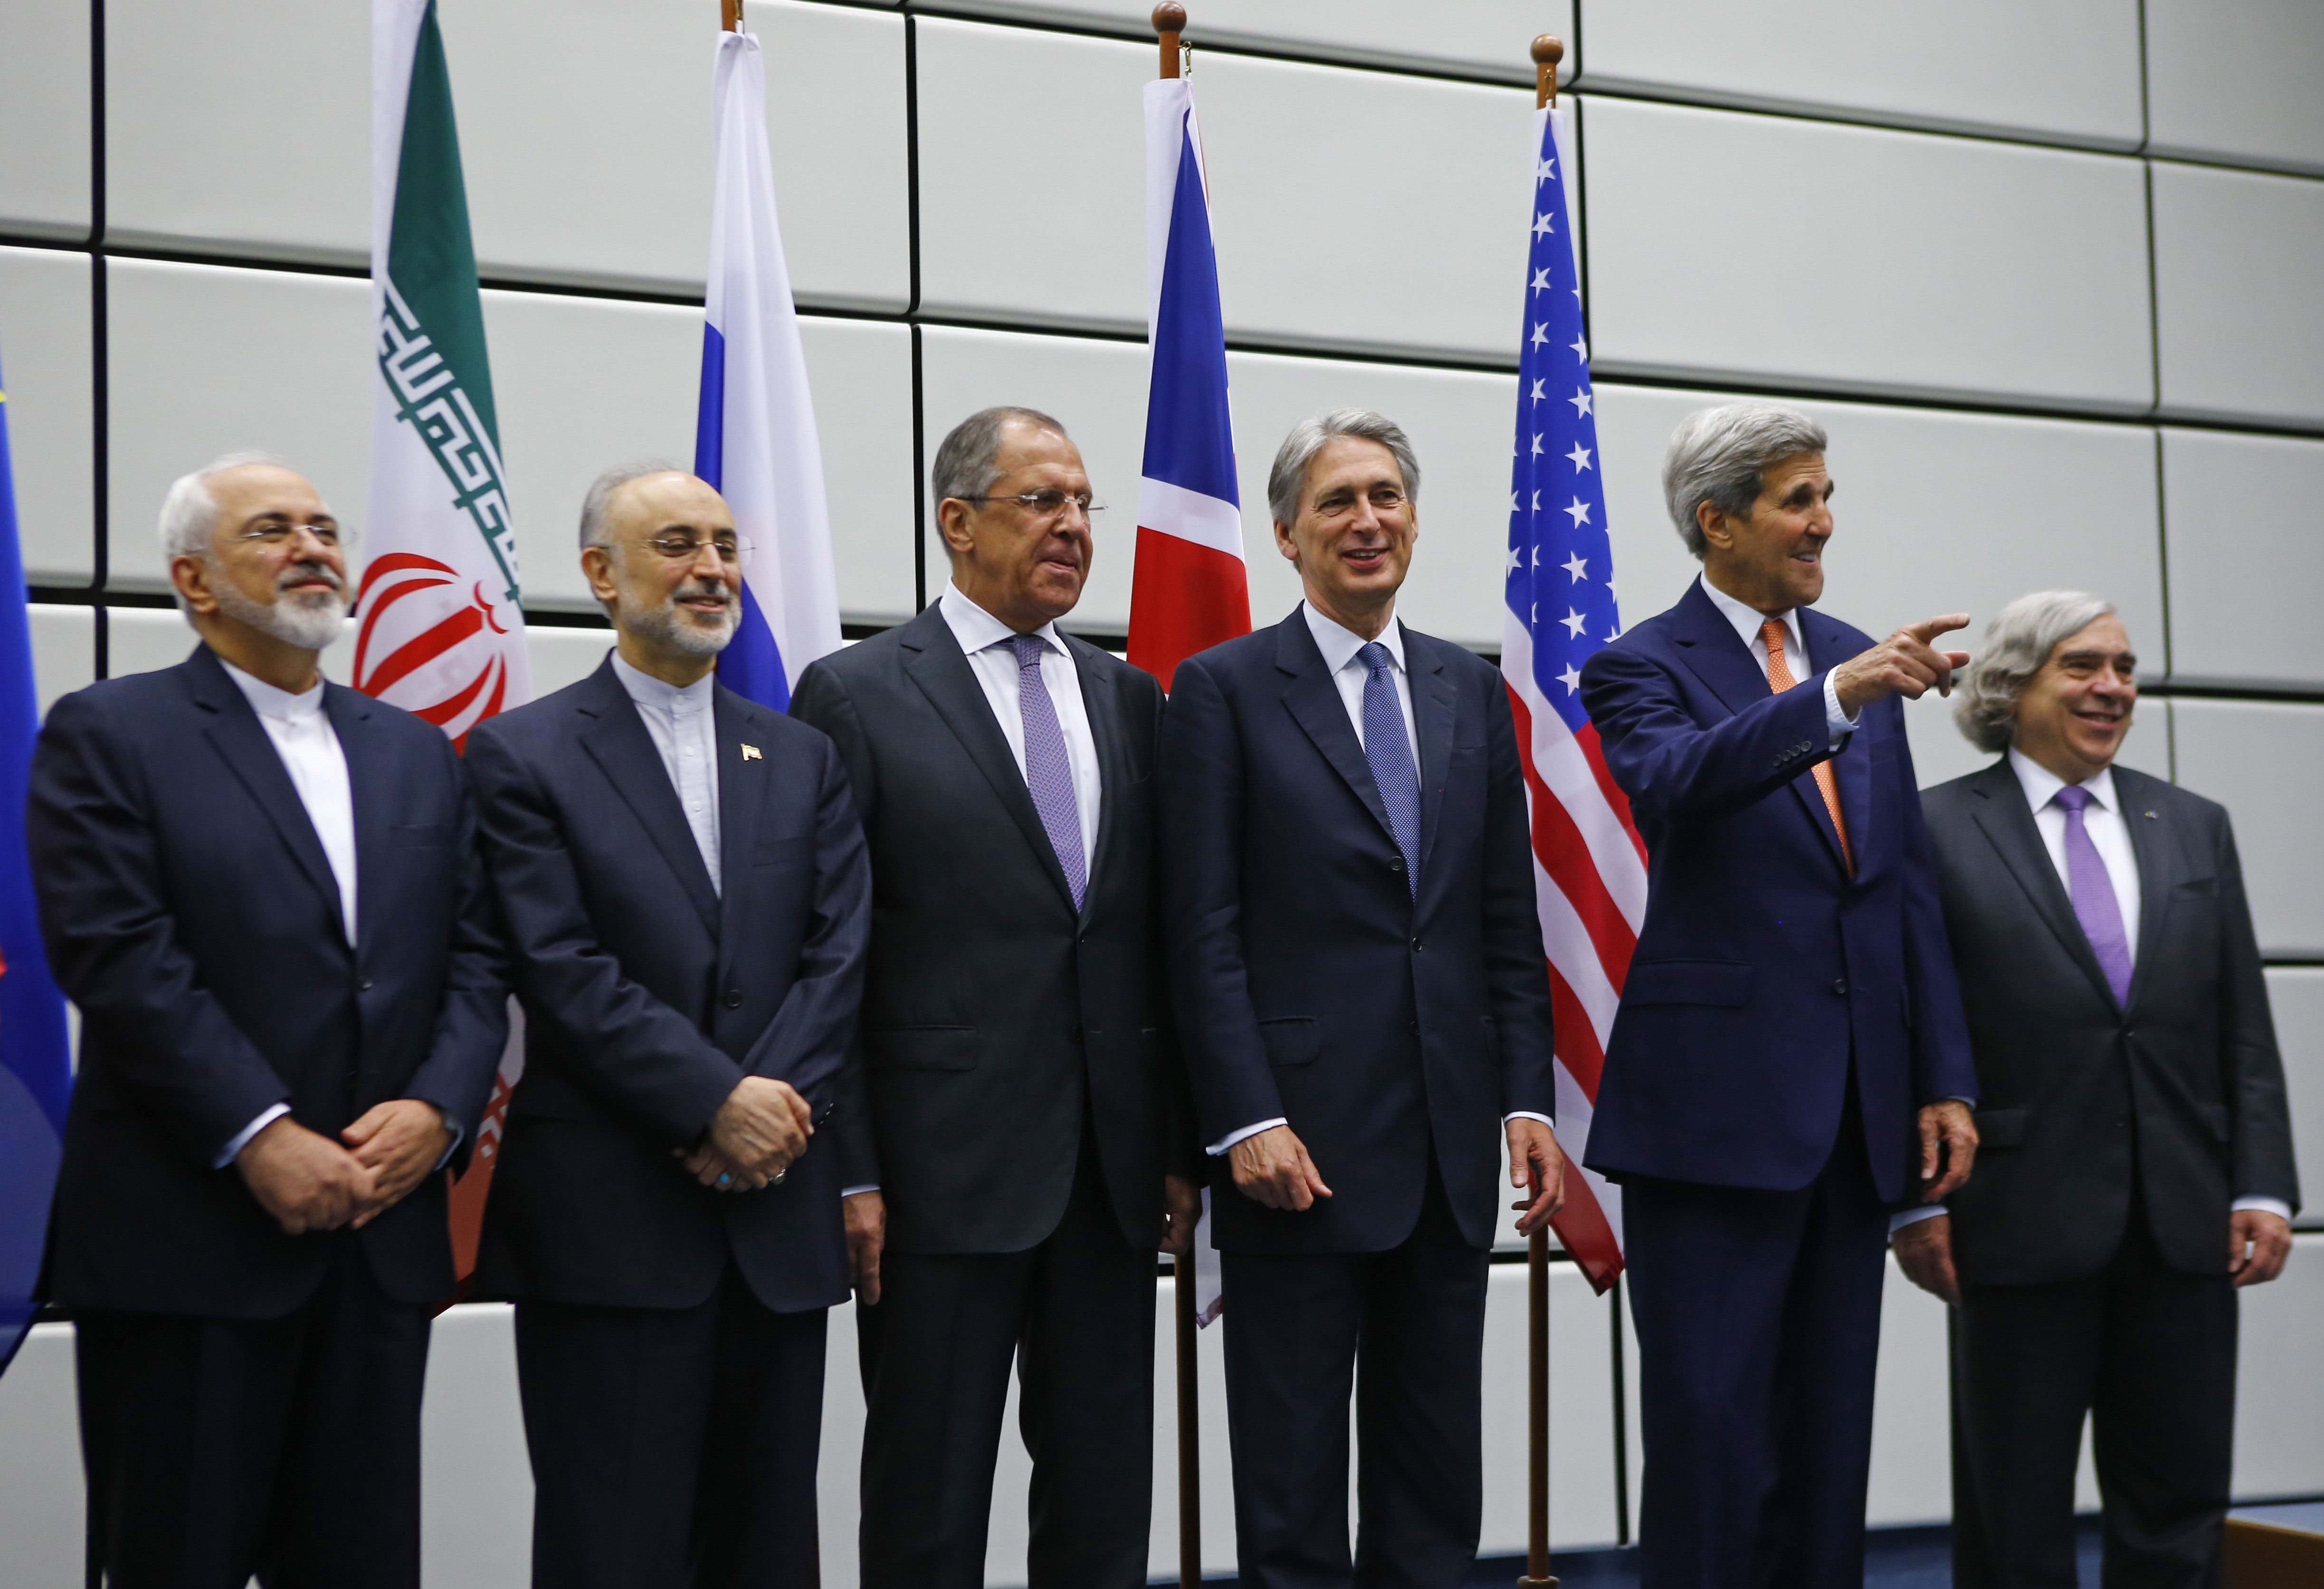 Открыли 6 стран. Ядерная сделка с Ираном. Большая шестерка стран. «Шестерка переговорщиков» по иранской ядерной программе. 6 Мировых держав.